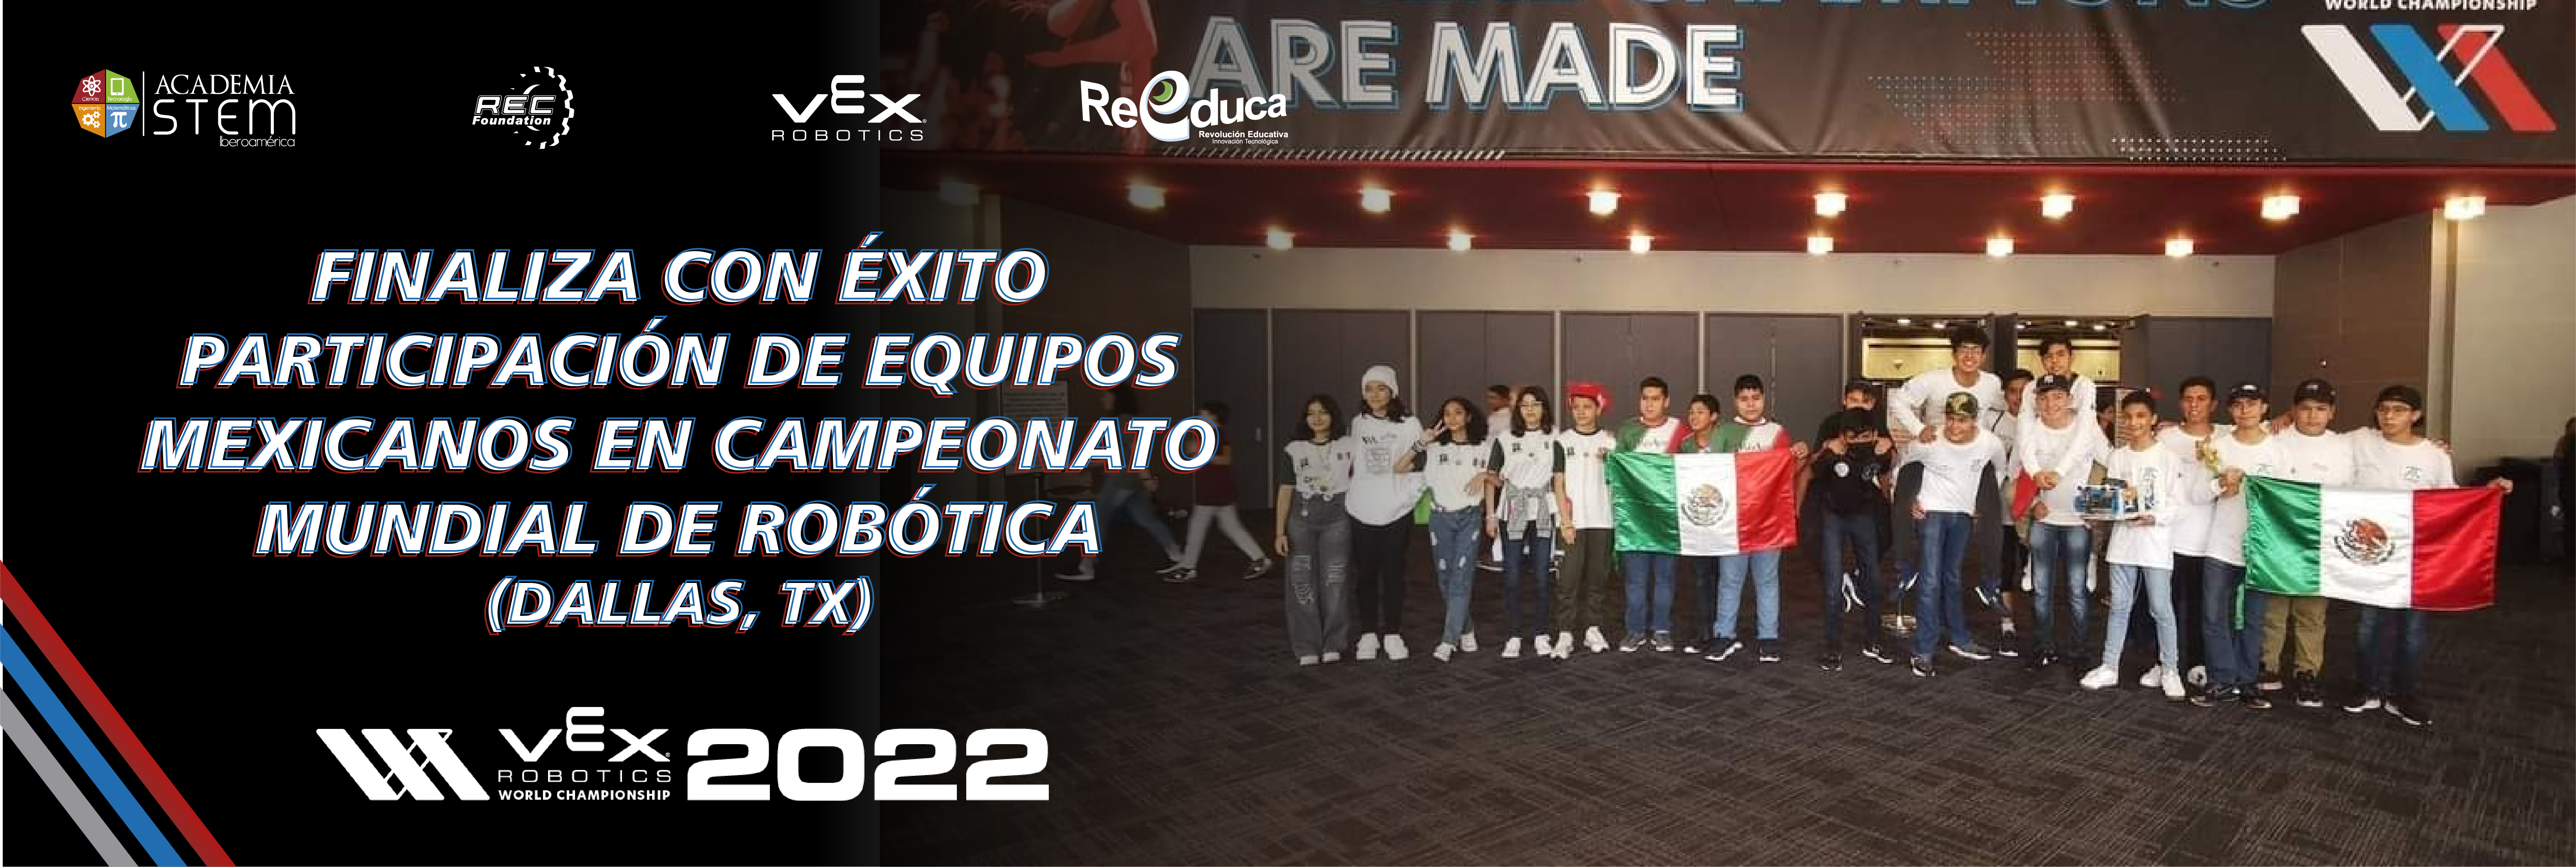 Finaliza con éxito paticipación de equipos Mexicanos en el Campeonato Mundial de Robótica 2022